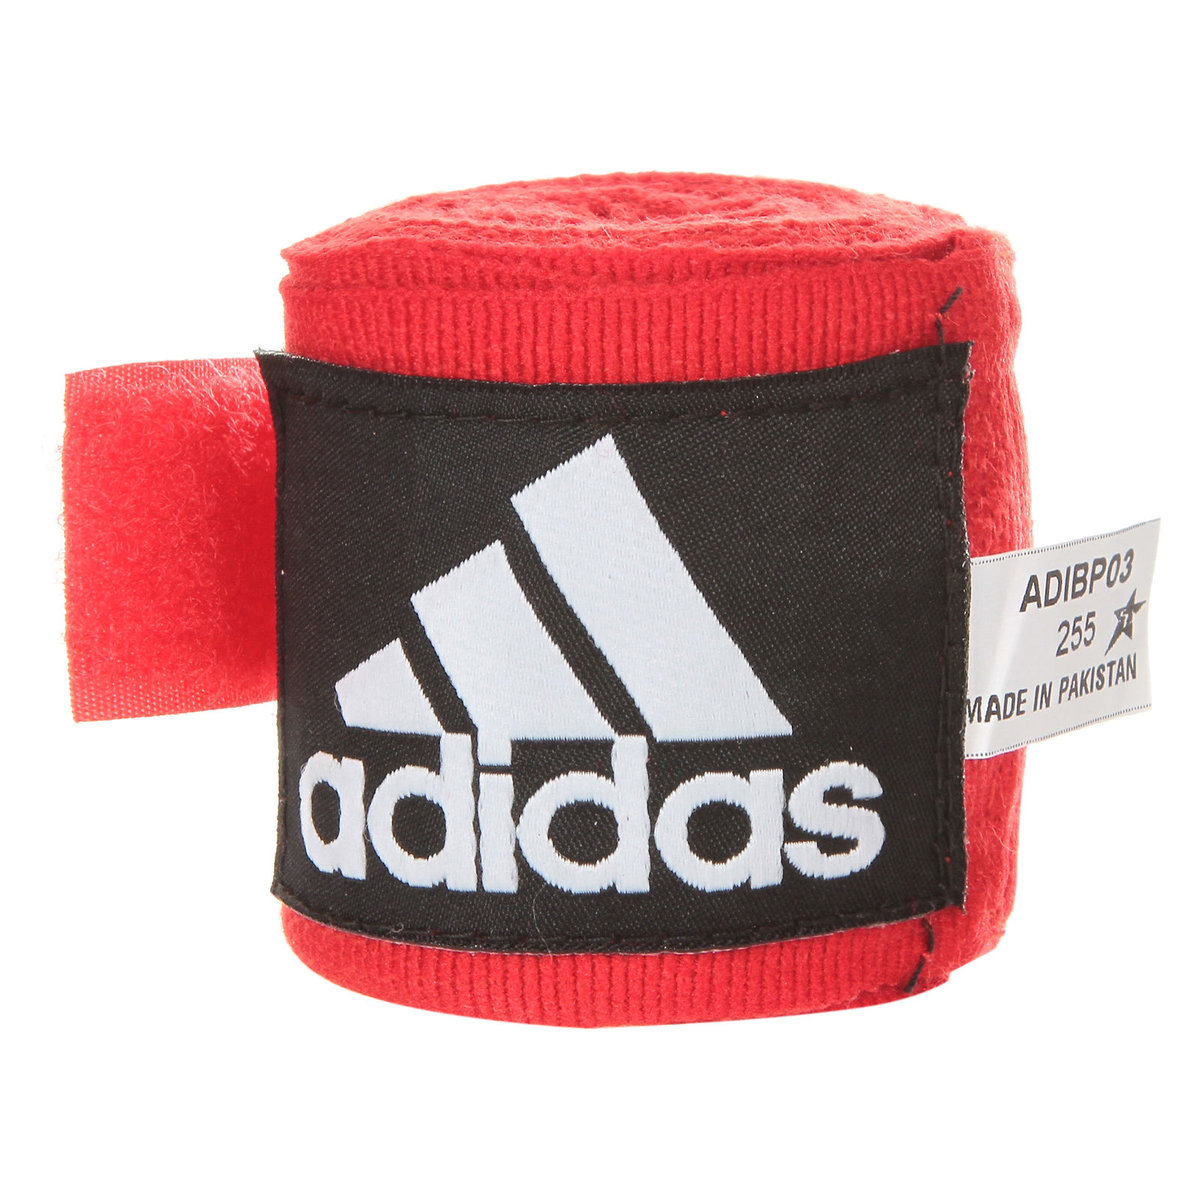 Фото - Захист для єдиноборств Adidas , Taśma bokserska, ADIBP03, czerwony, 350x5cm 